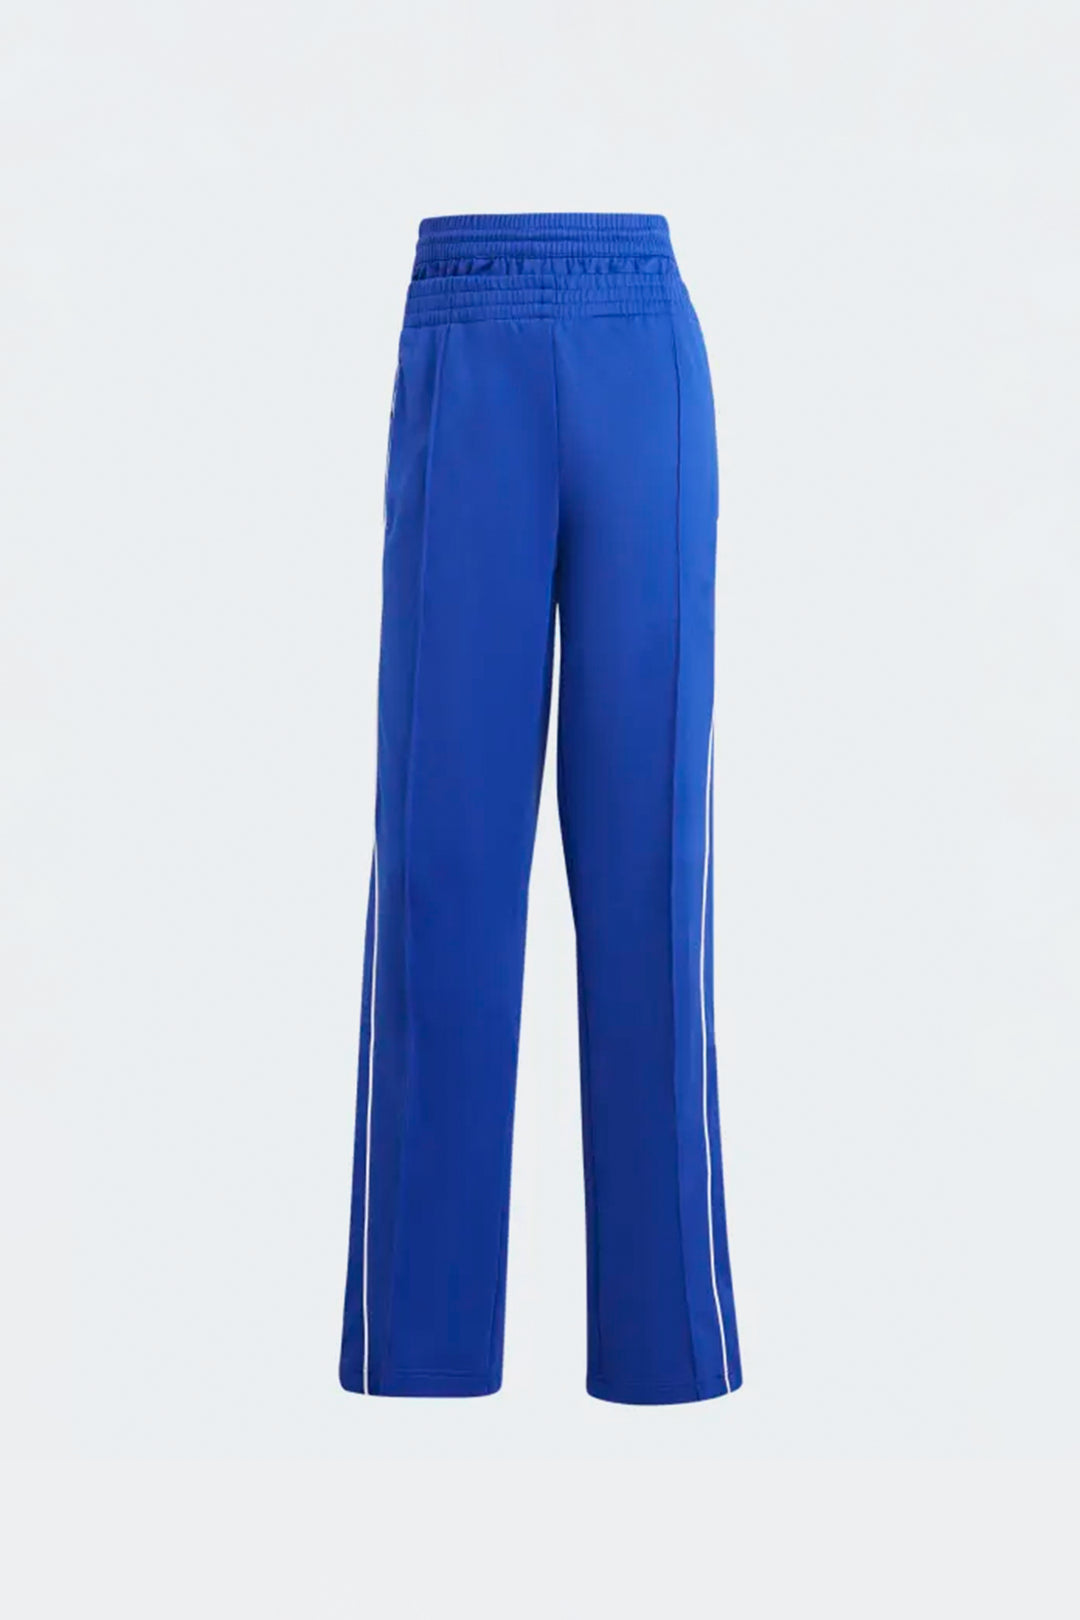 Mujer Adidas Pantalon Azul